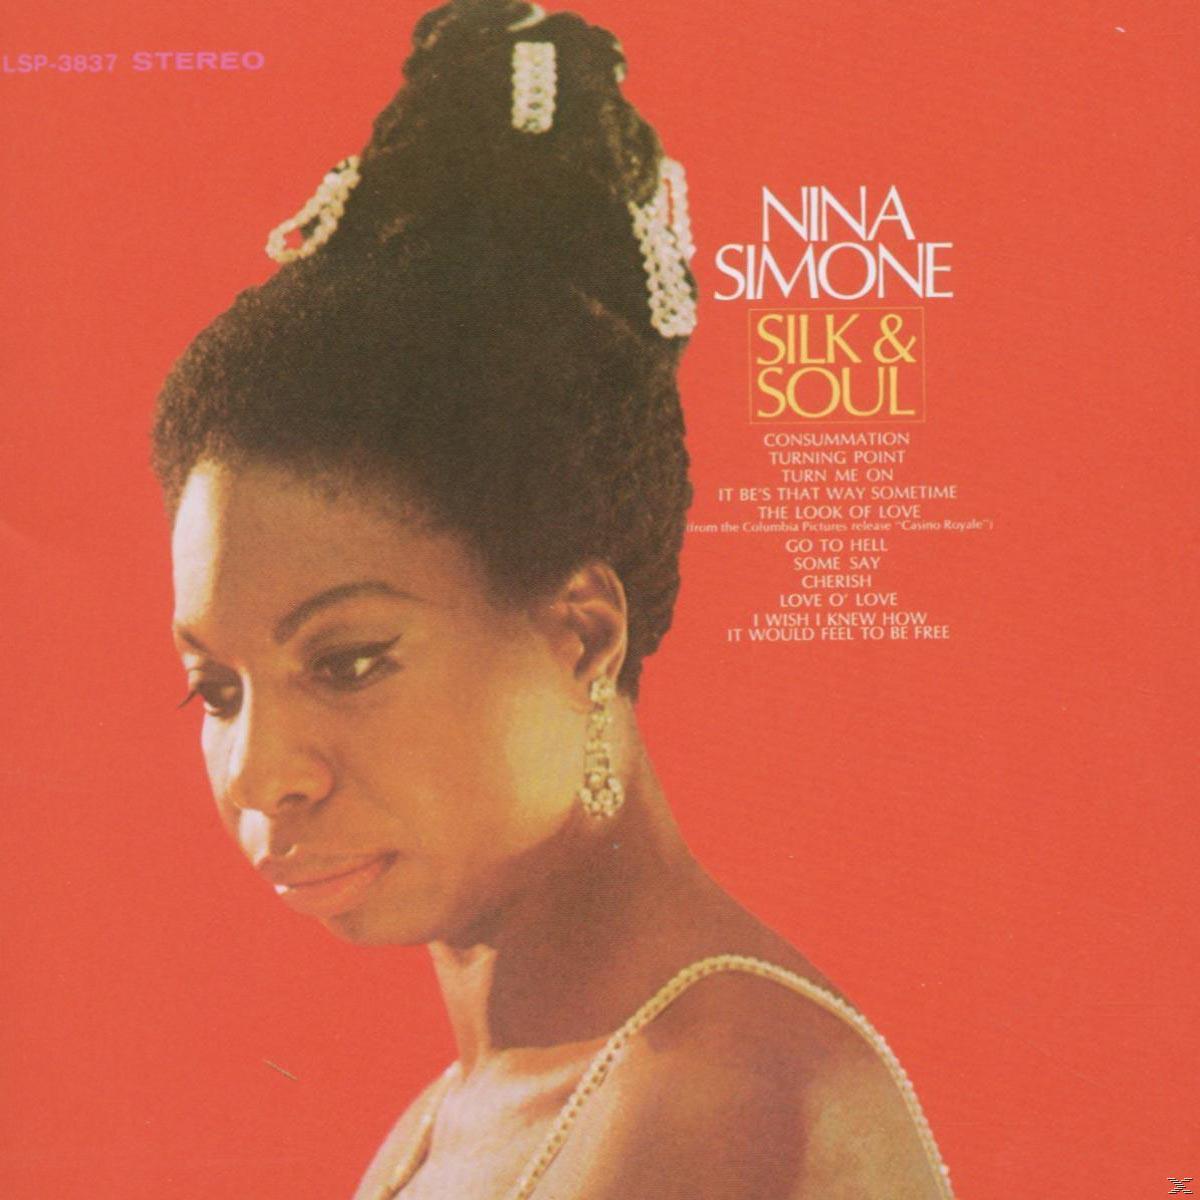 Soul & Nina Silk - - Simone (Vinyl)